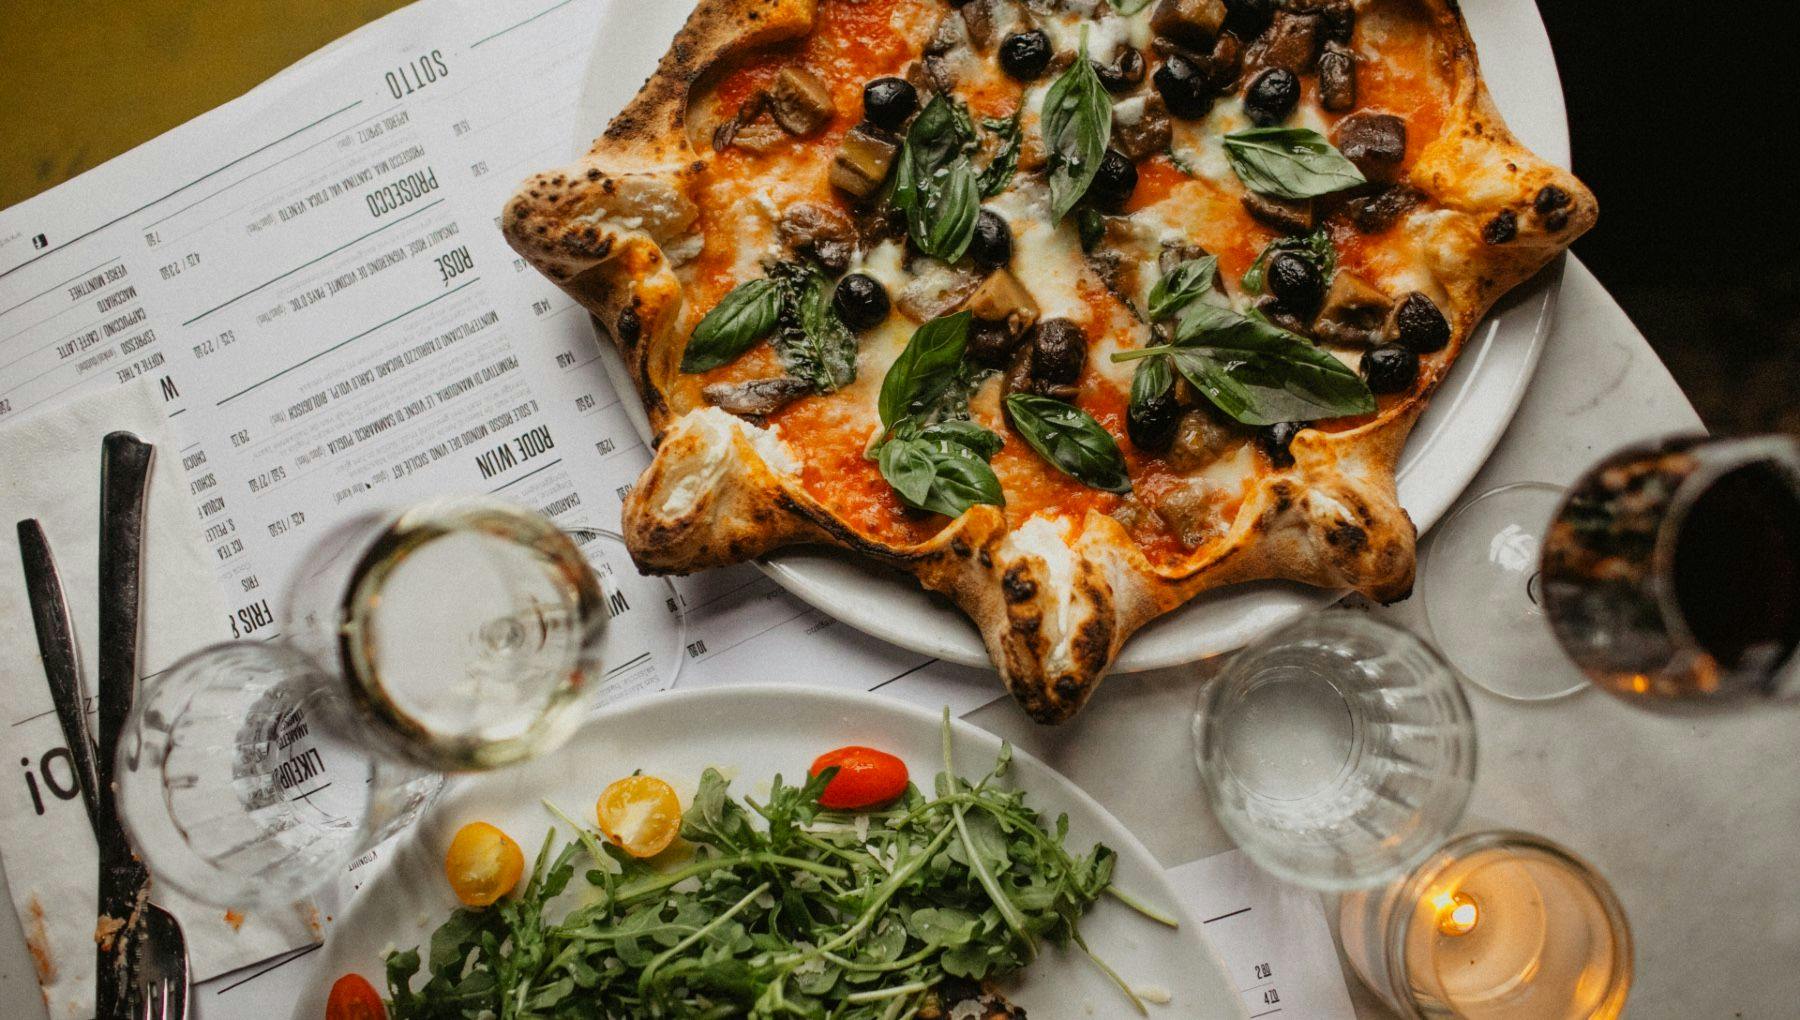 SOTTO Pizza signature dishes